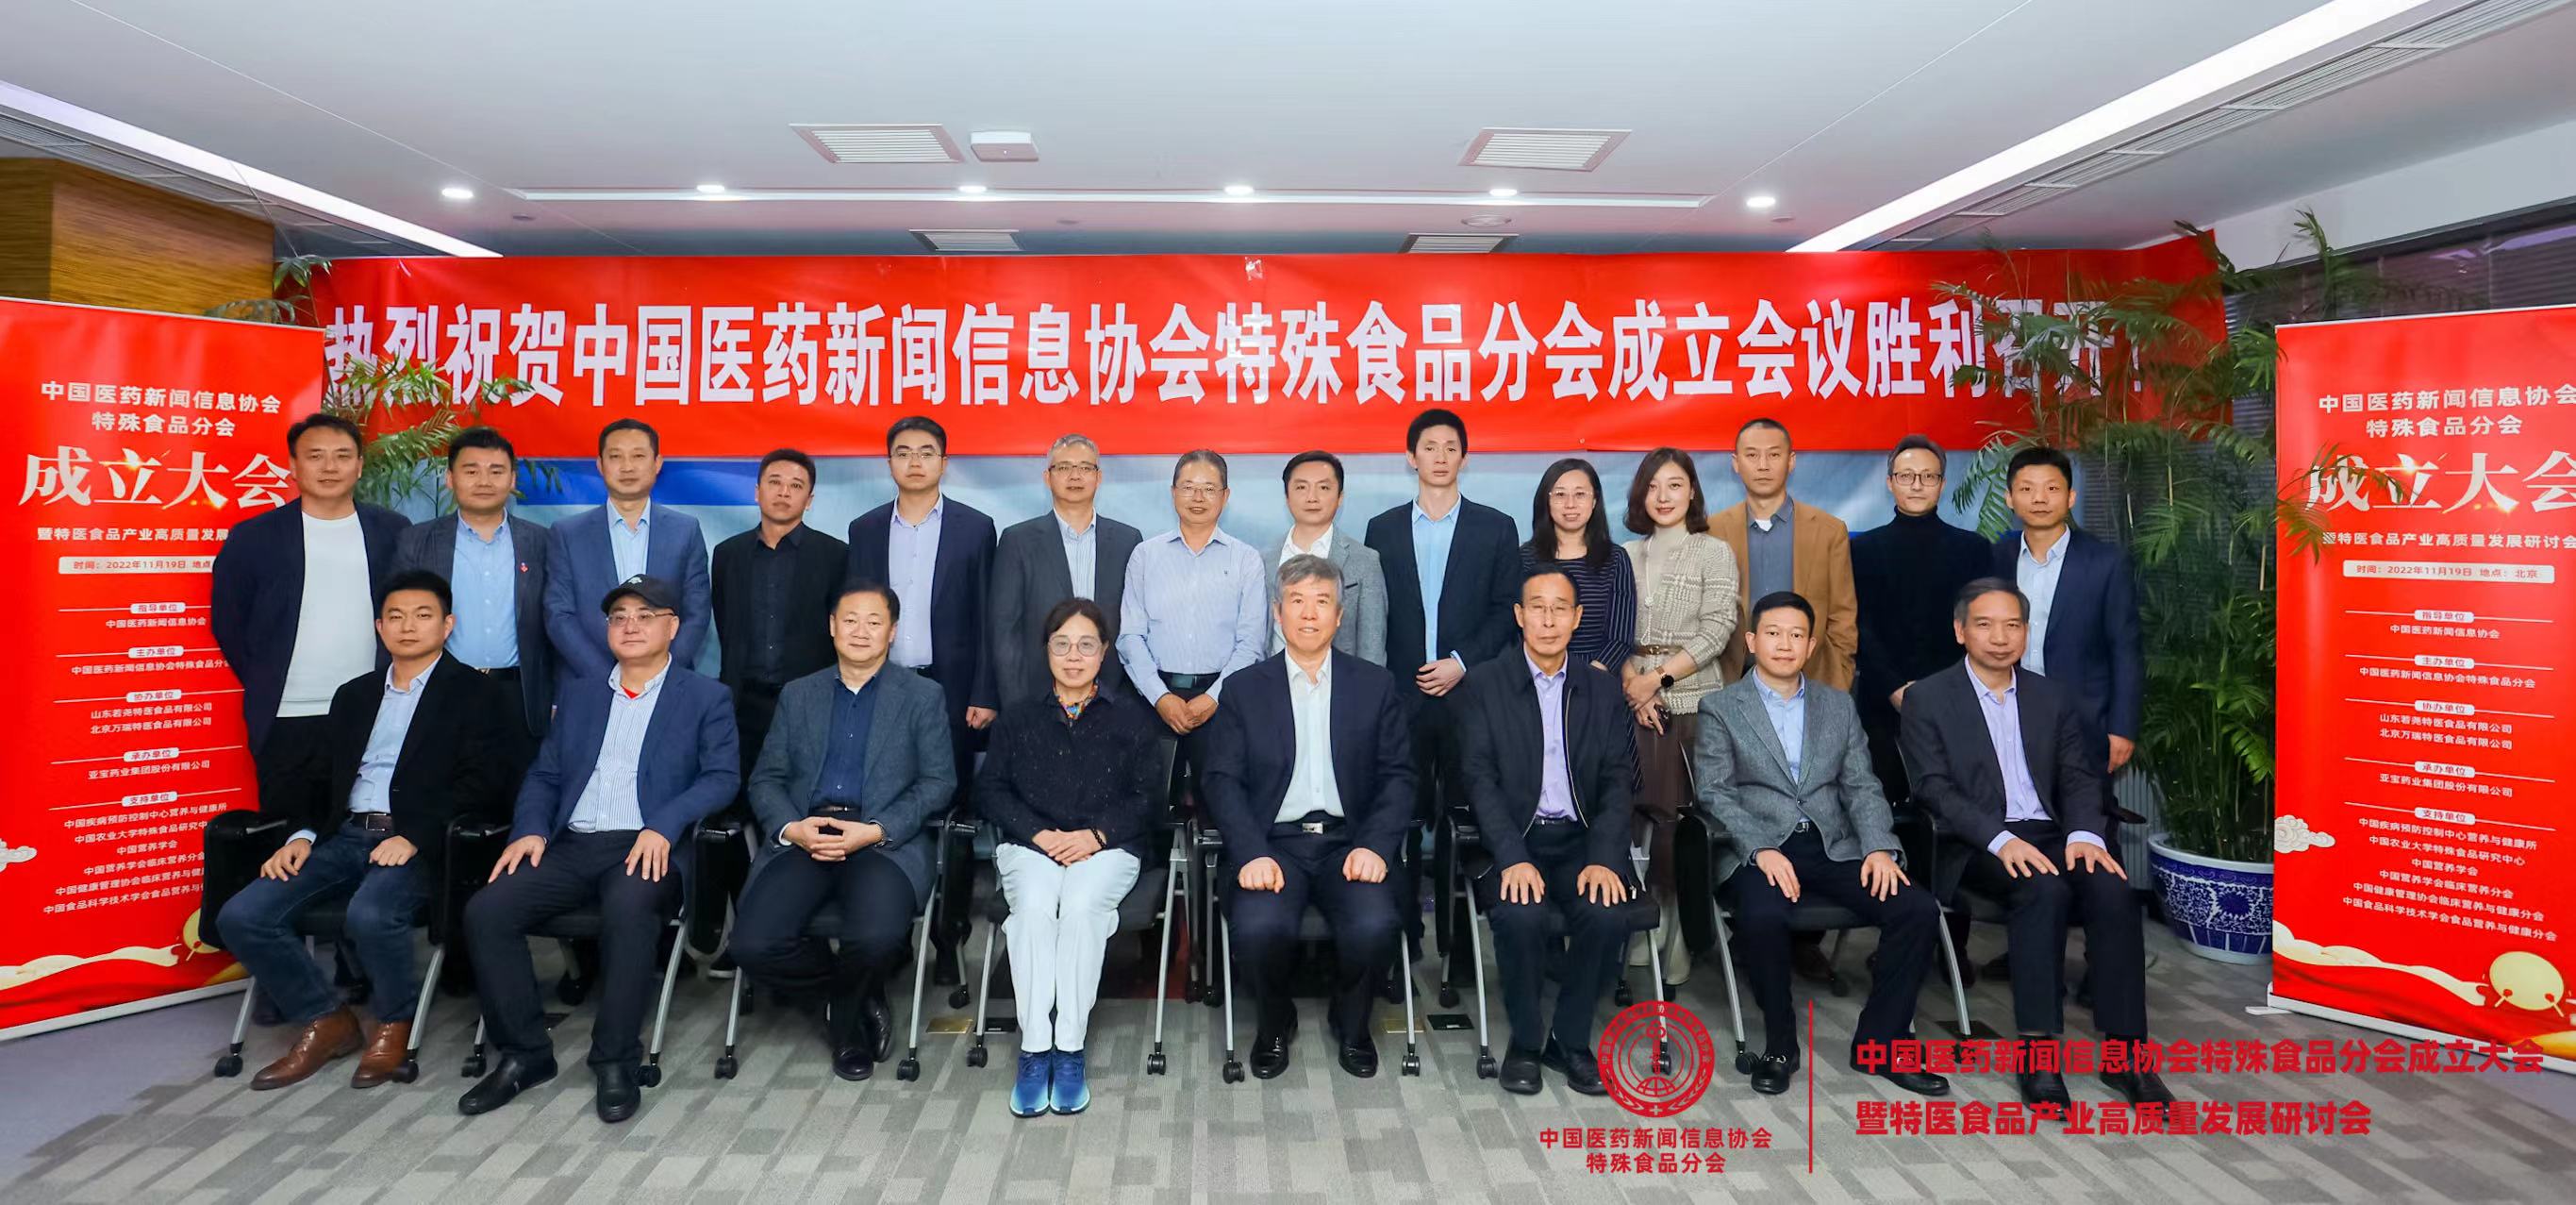 中国医药新闻信息协会特殊食品分会成立大会暨特医食品产业高质量发展研讨会在京召开